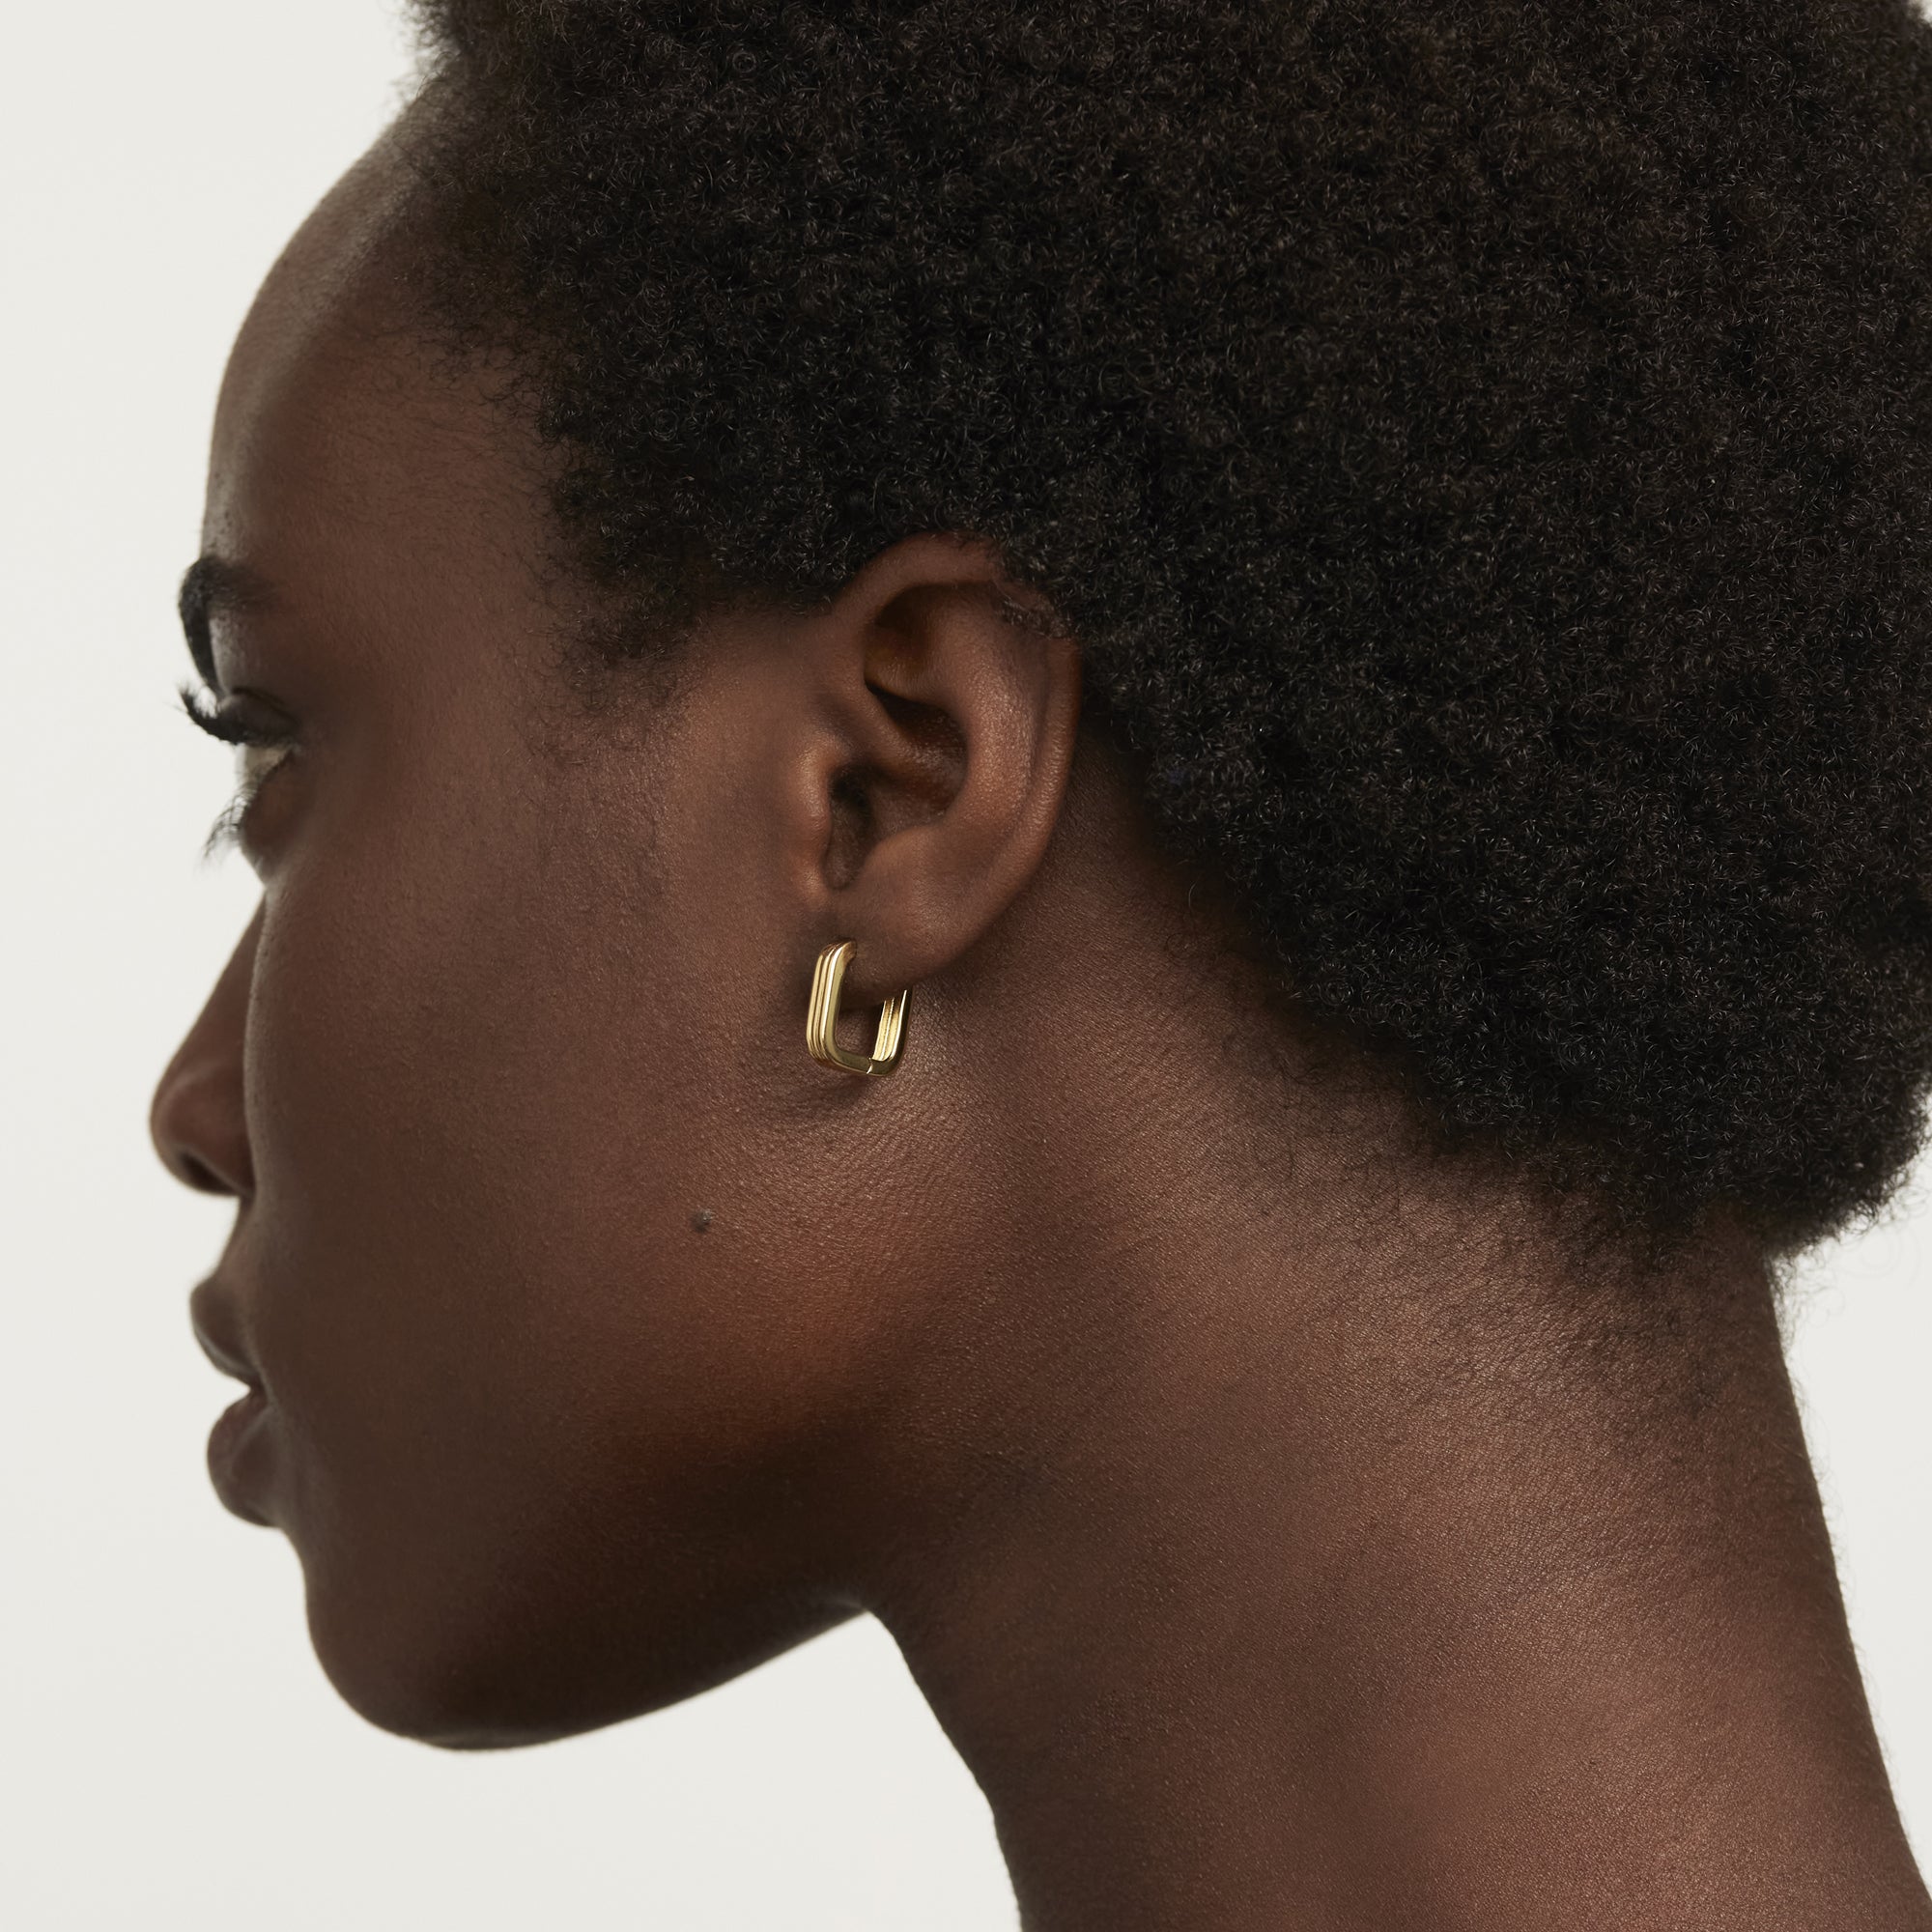 Nova Gold Earrings